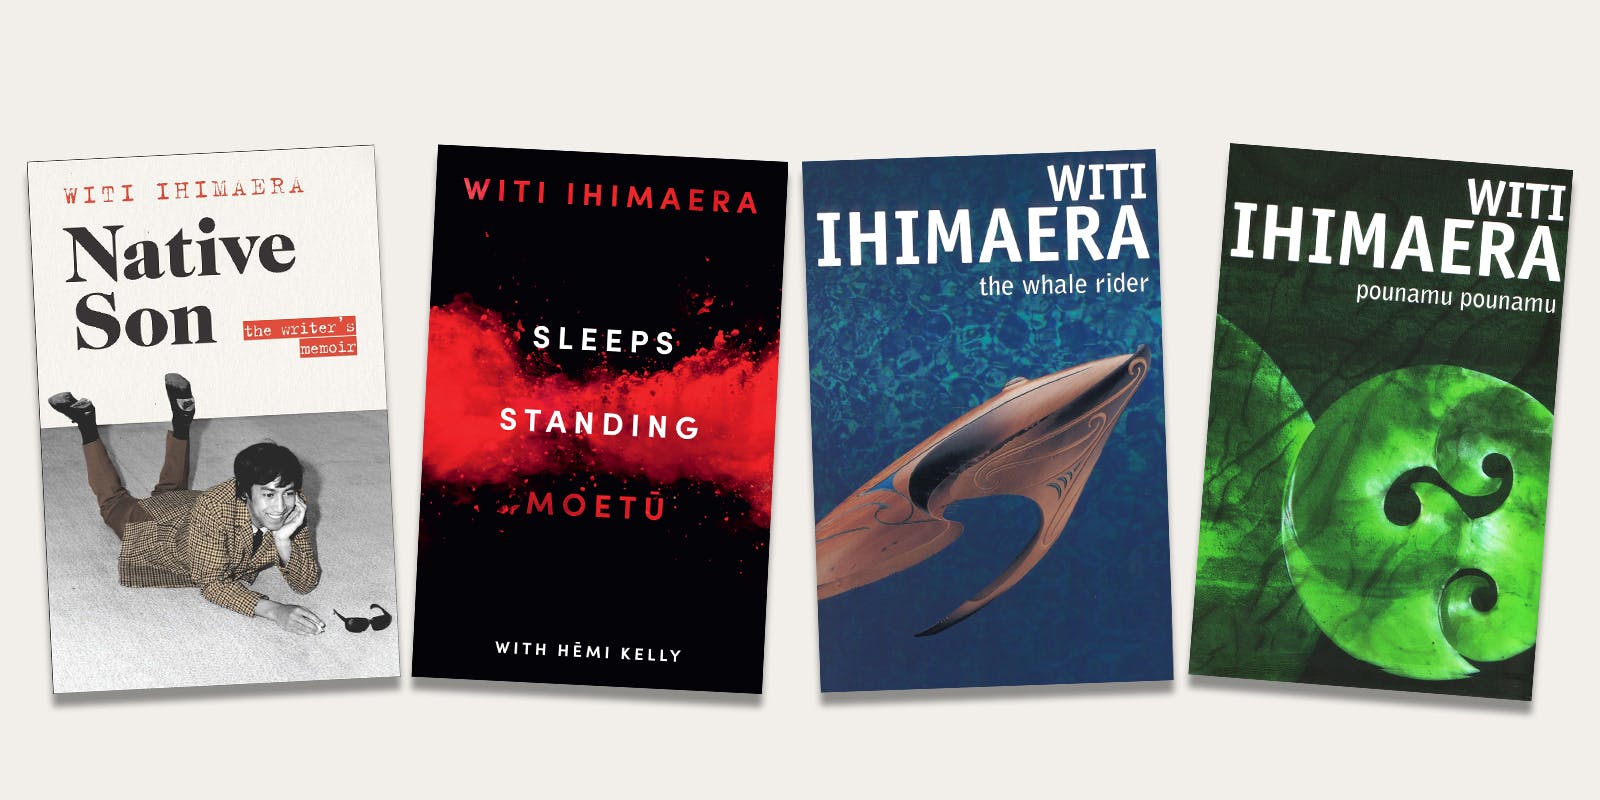 Ways into Witi Ihimaera's works